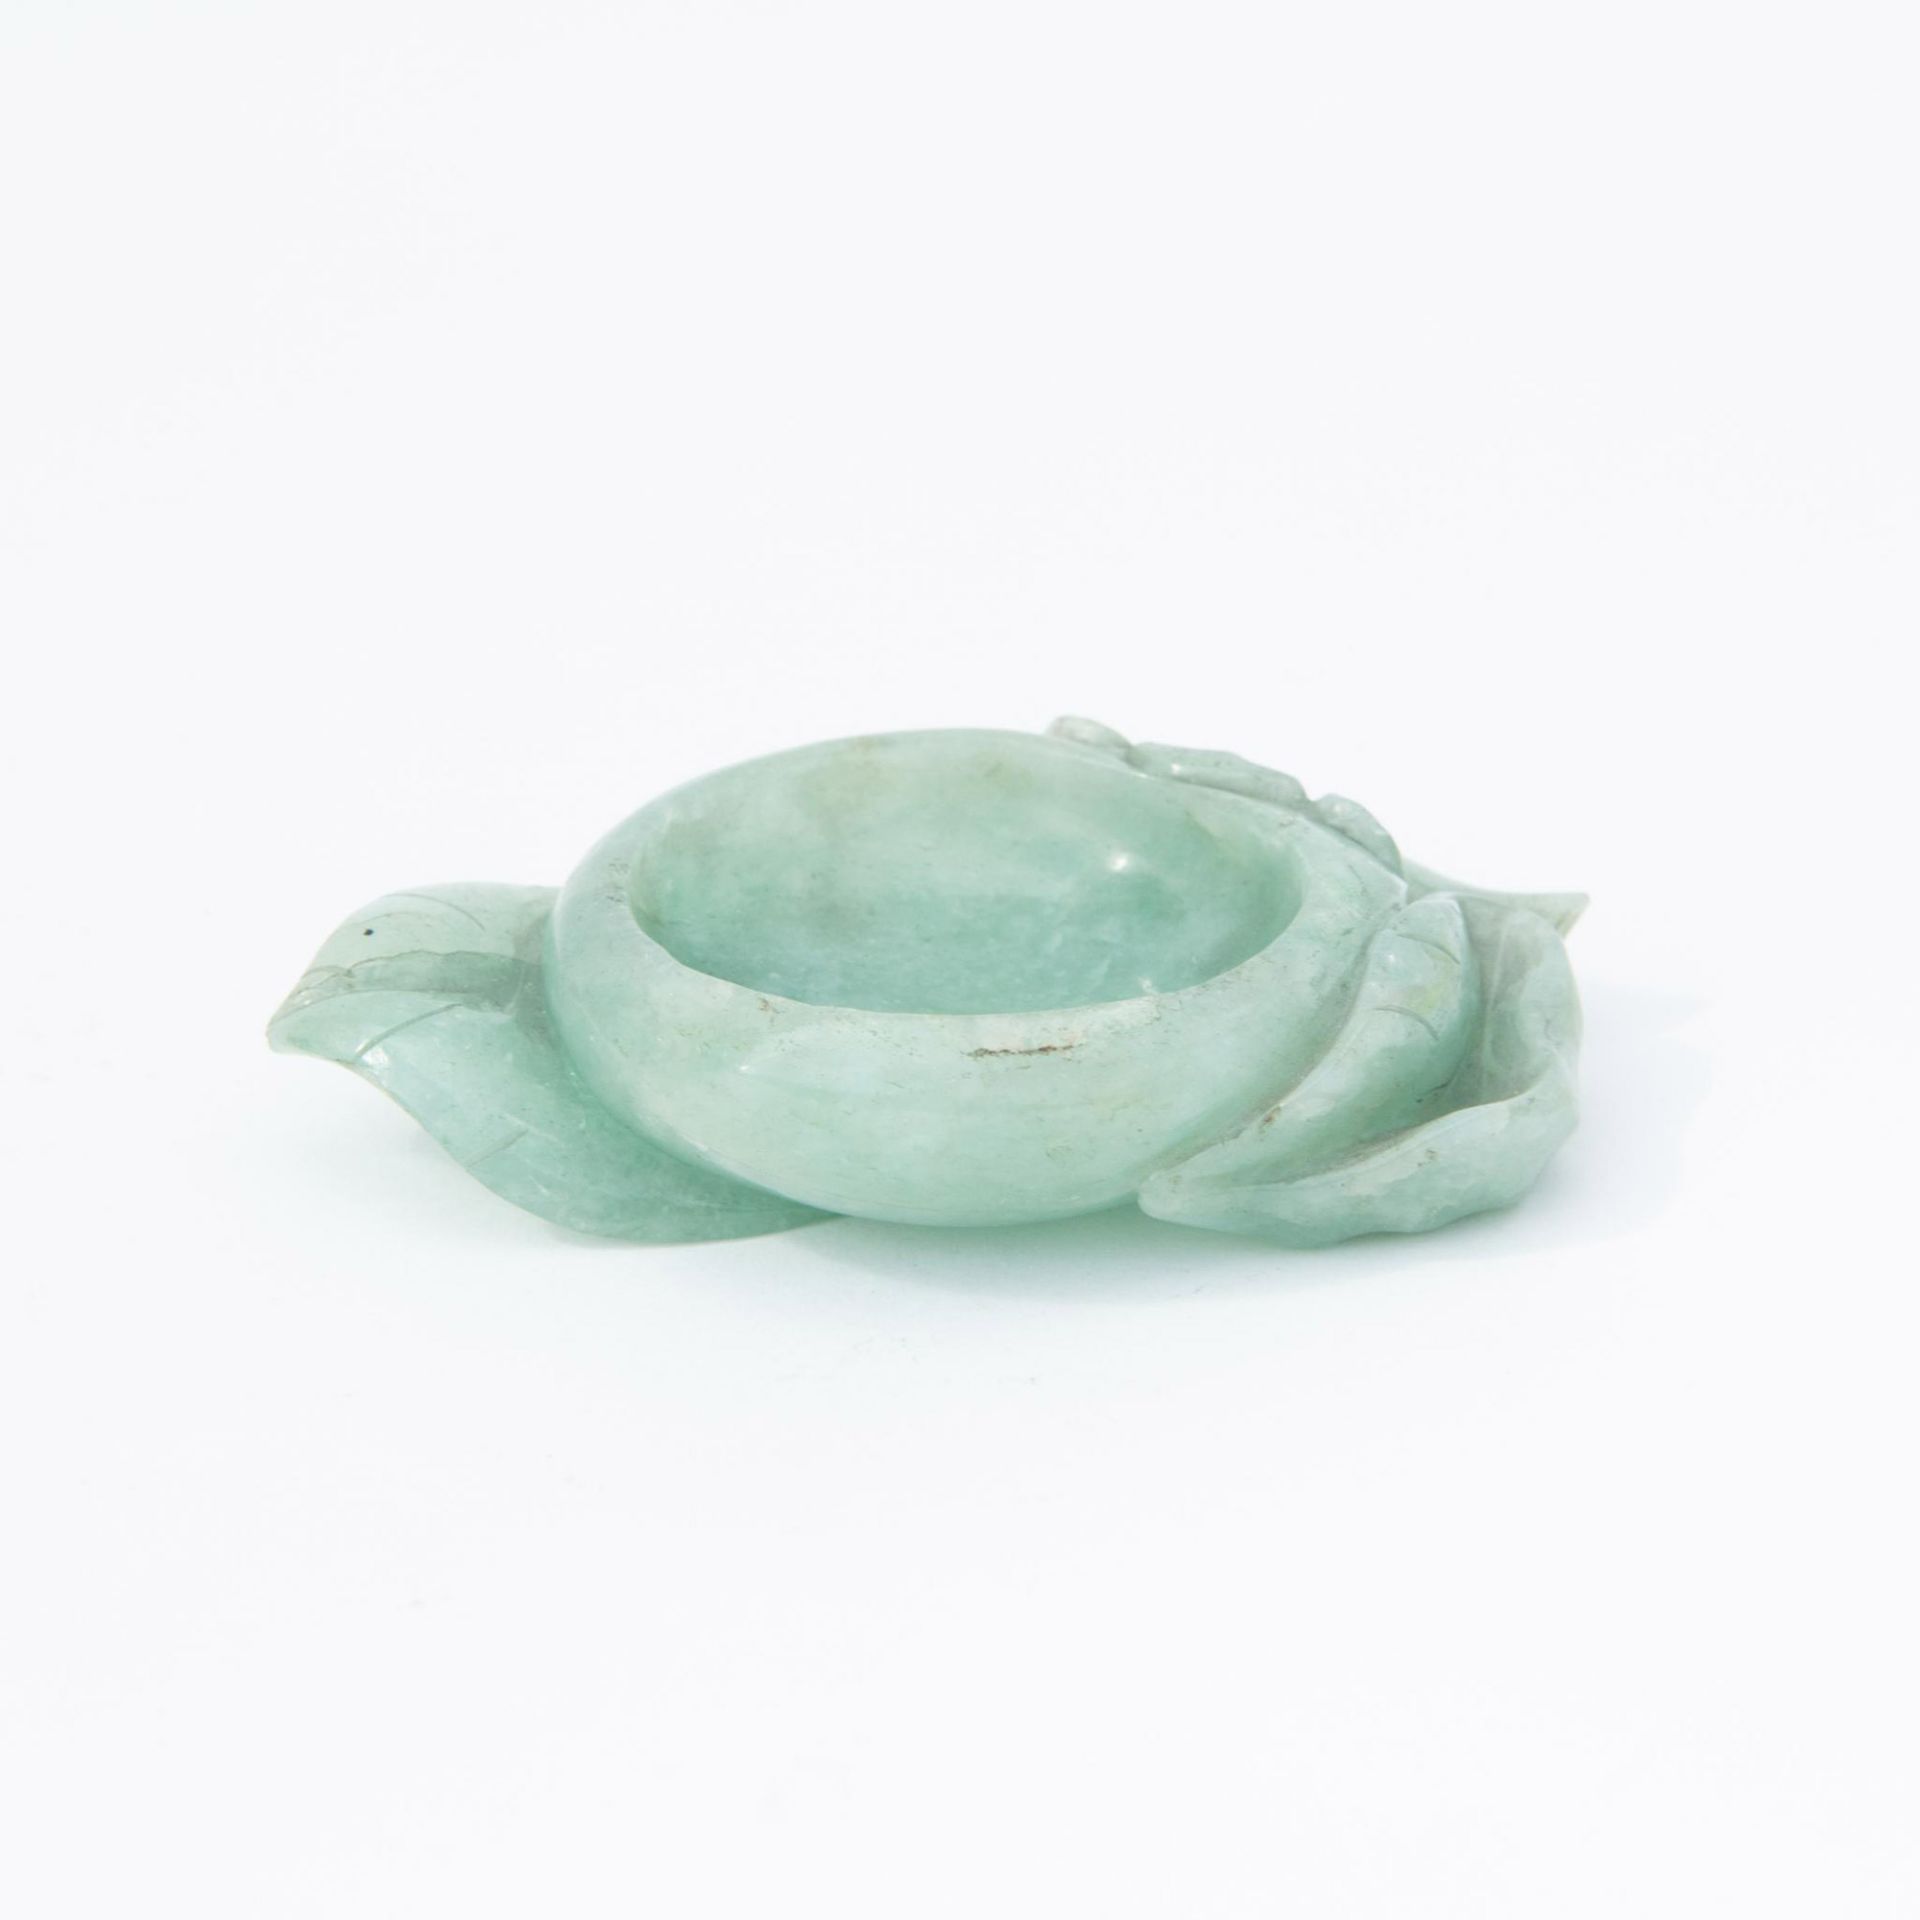 Antique Chinese Jadeite Lotus Water Bowl - Image 3 of 4